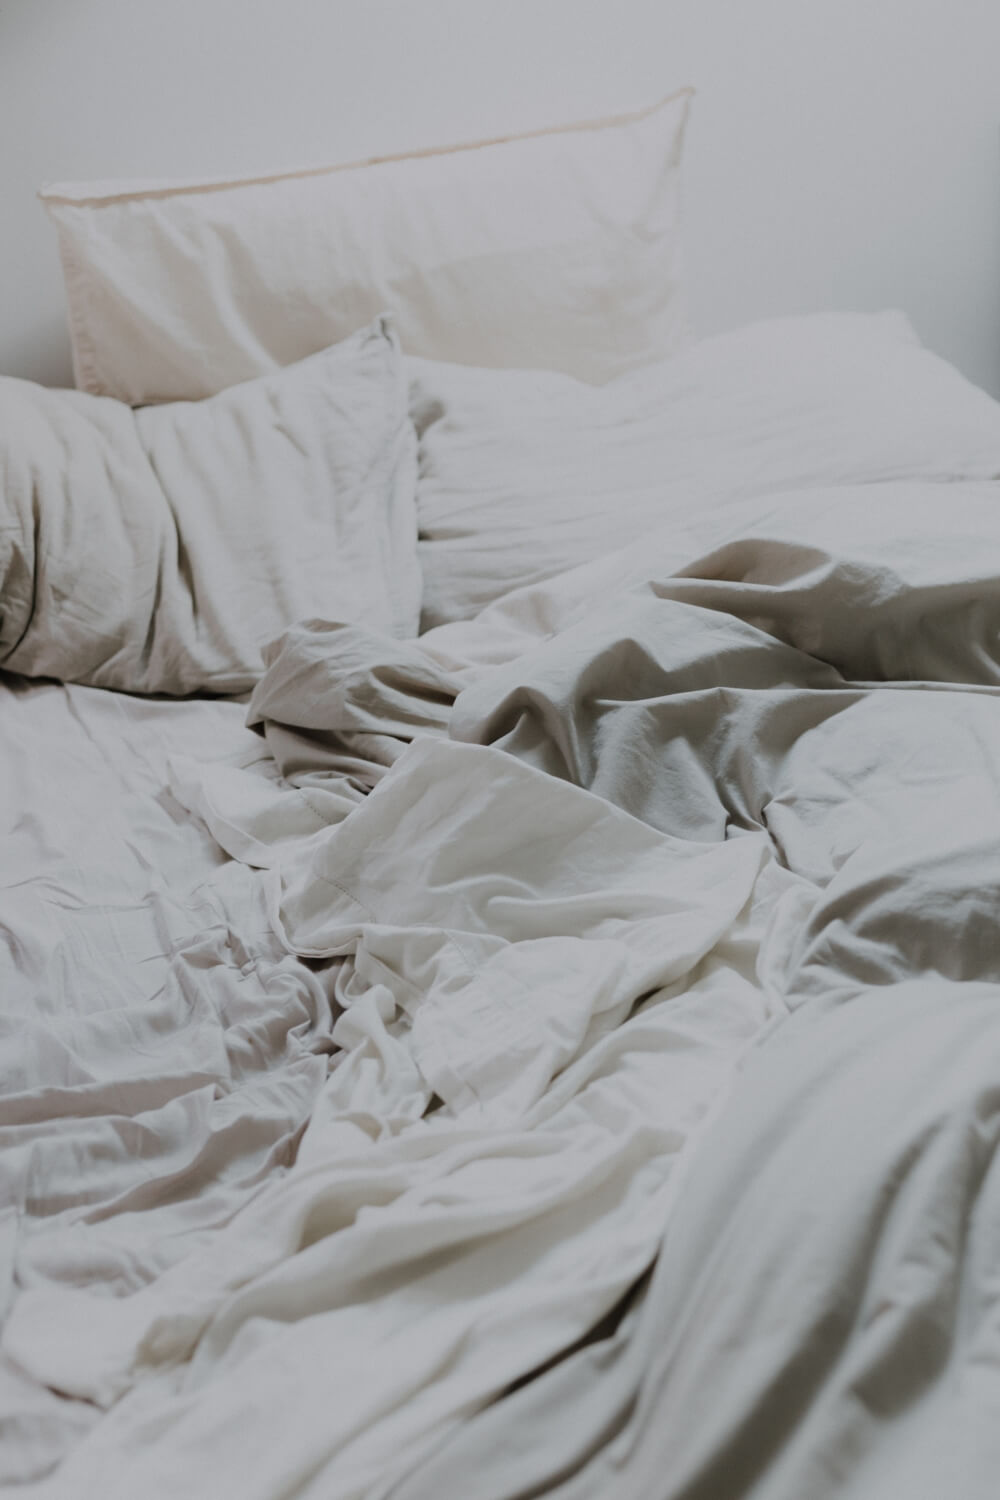 Un bien dormir avec une couverture blanche.